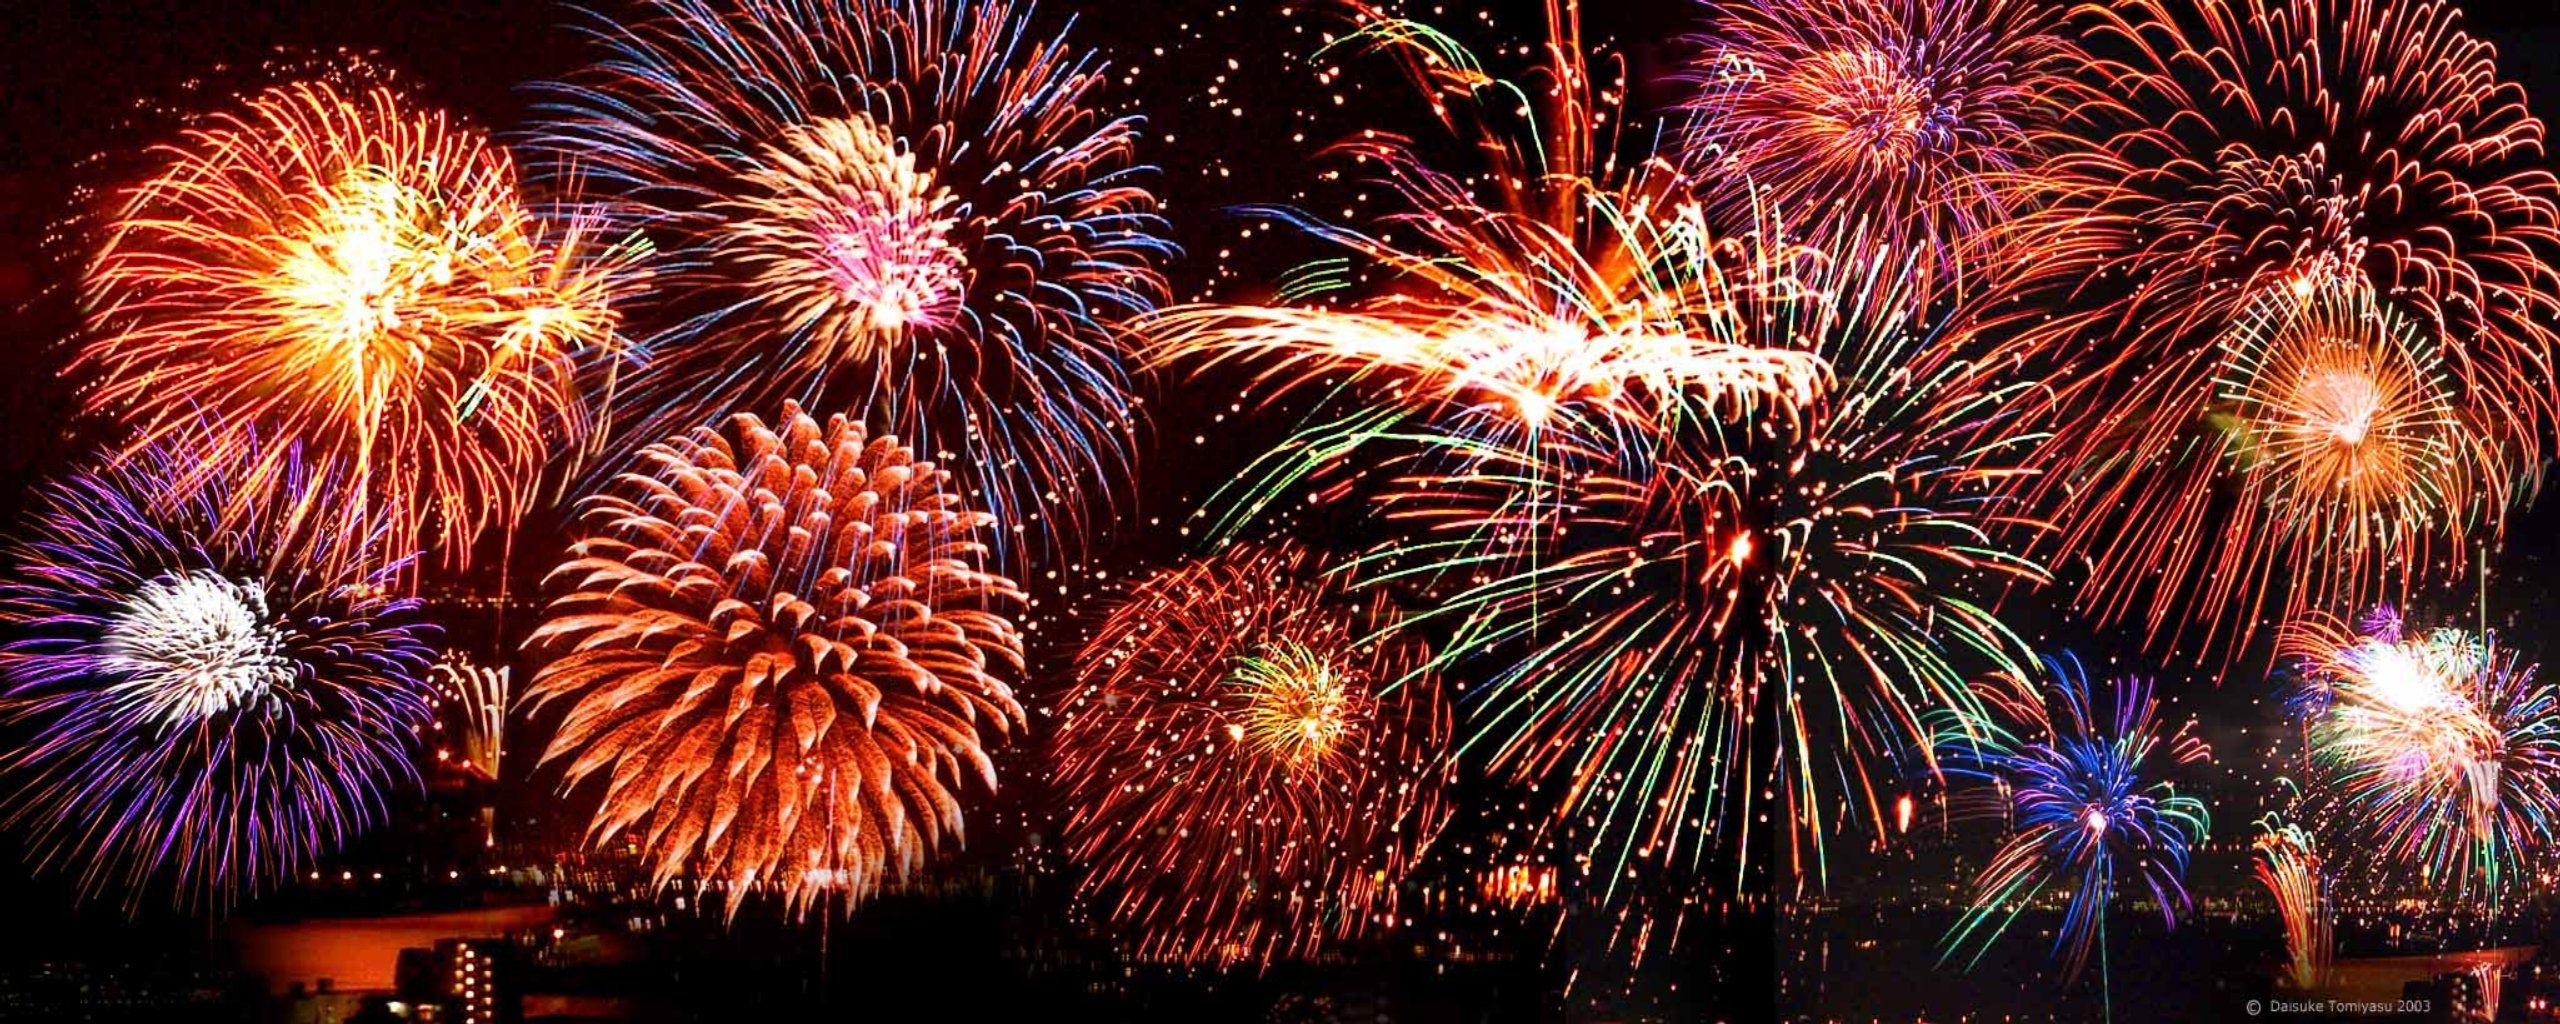 Fireworks New Year Wallpaper Full HD